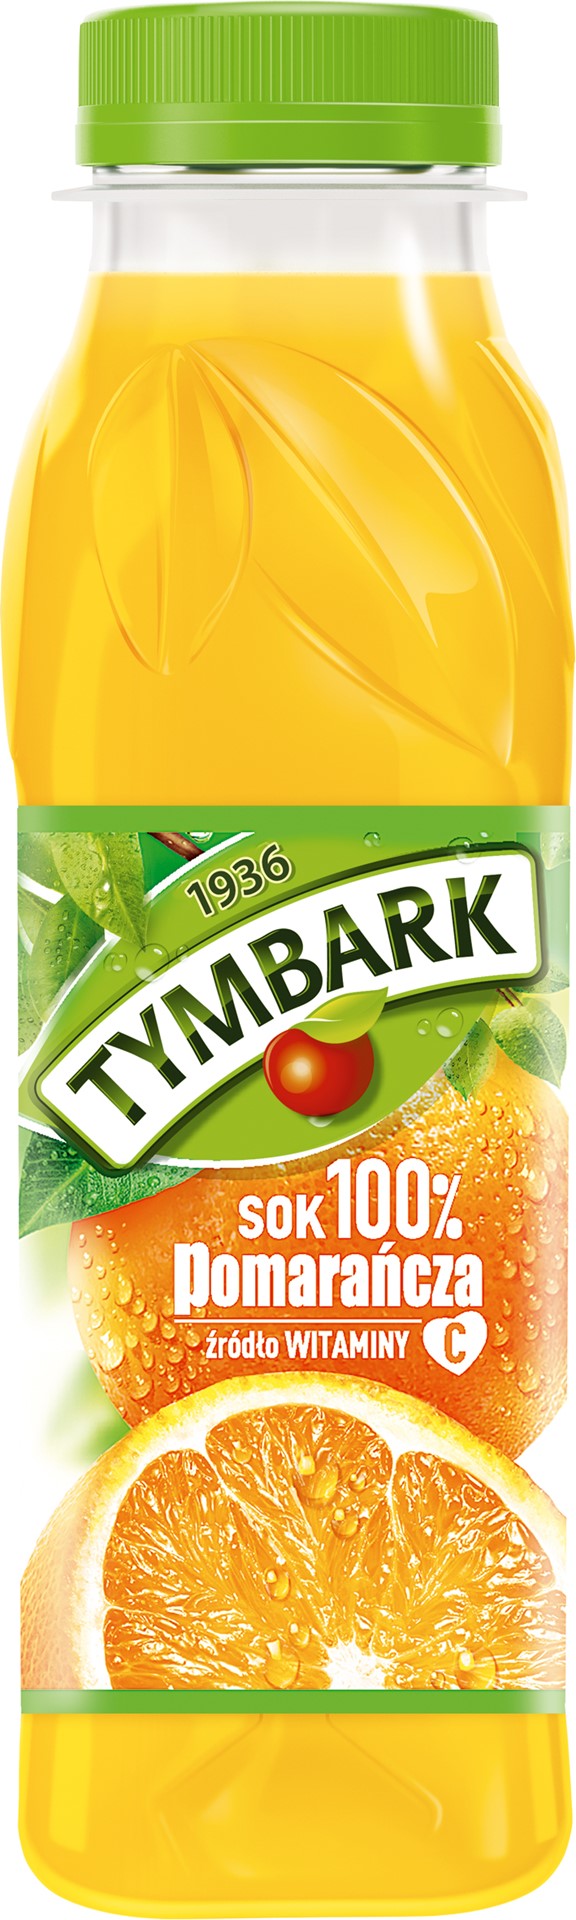 TYMBARK SOK 100% pet pomarańcza 300ml/12